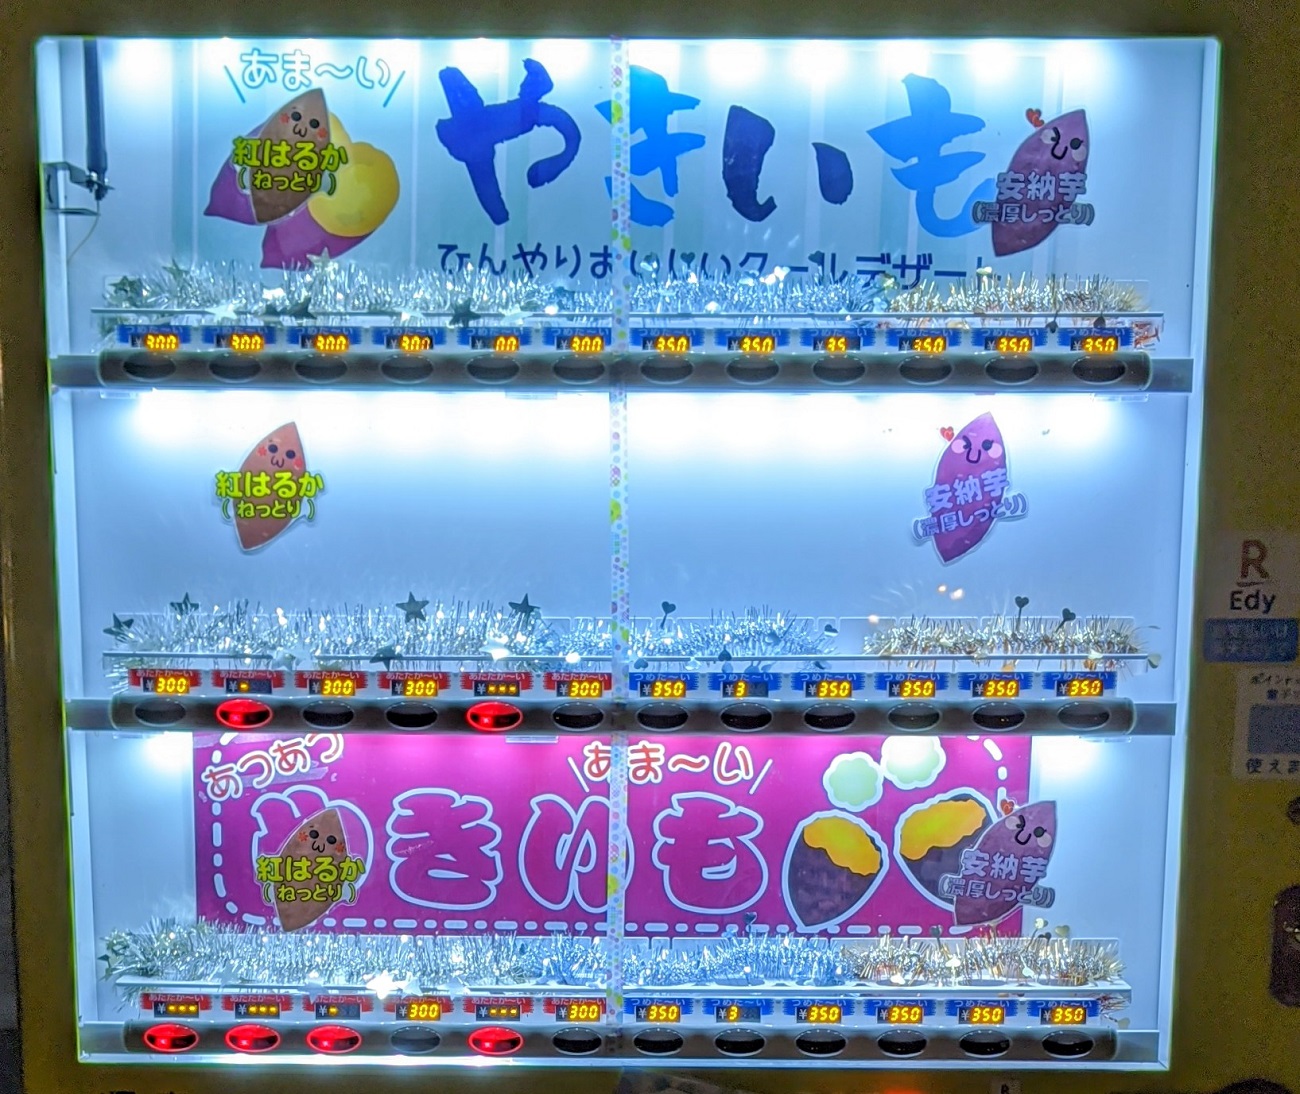 Bạn có thể mua được cả khoai lang nướng chảy mật ở máy bán hàng tự động tại Nhật Bản - Ảnh 3.